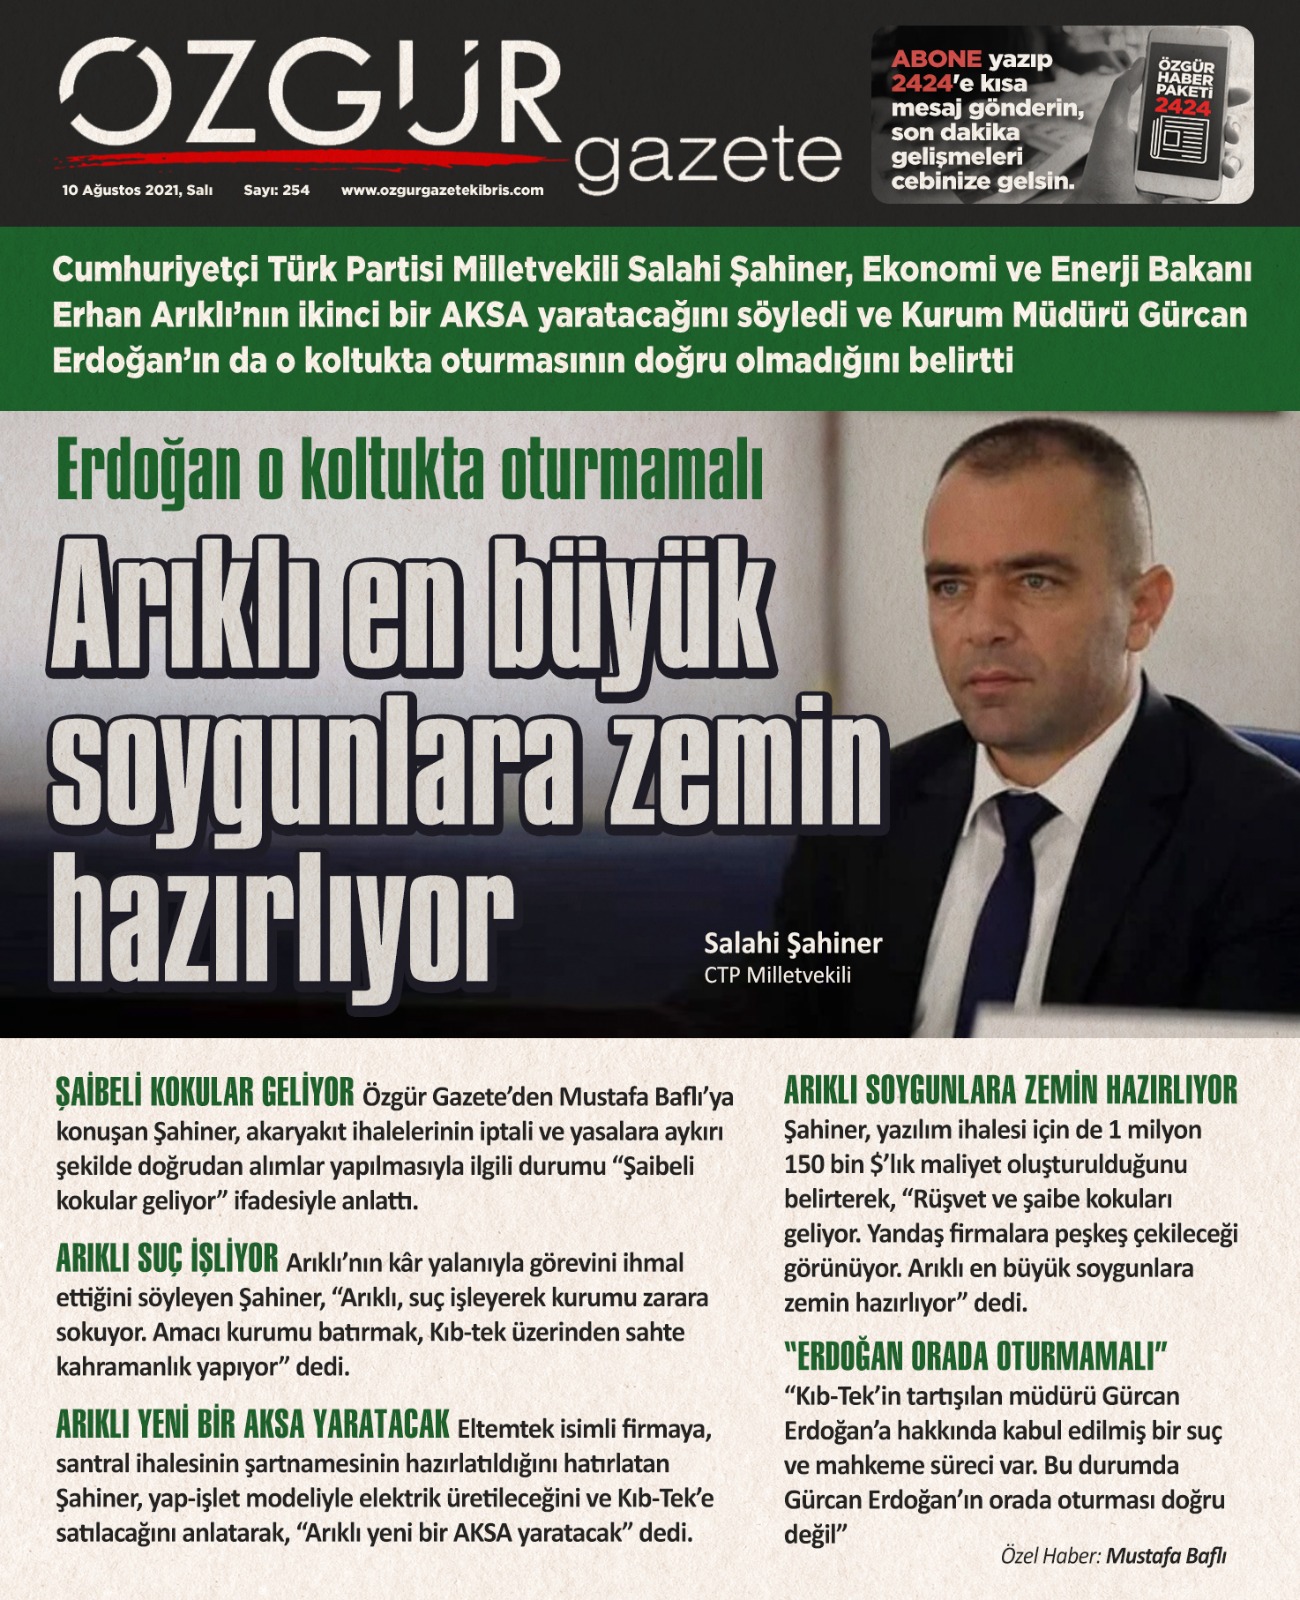 ozgur_gazete_kibris_arikli_kib_tek_ctp_sahiner